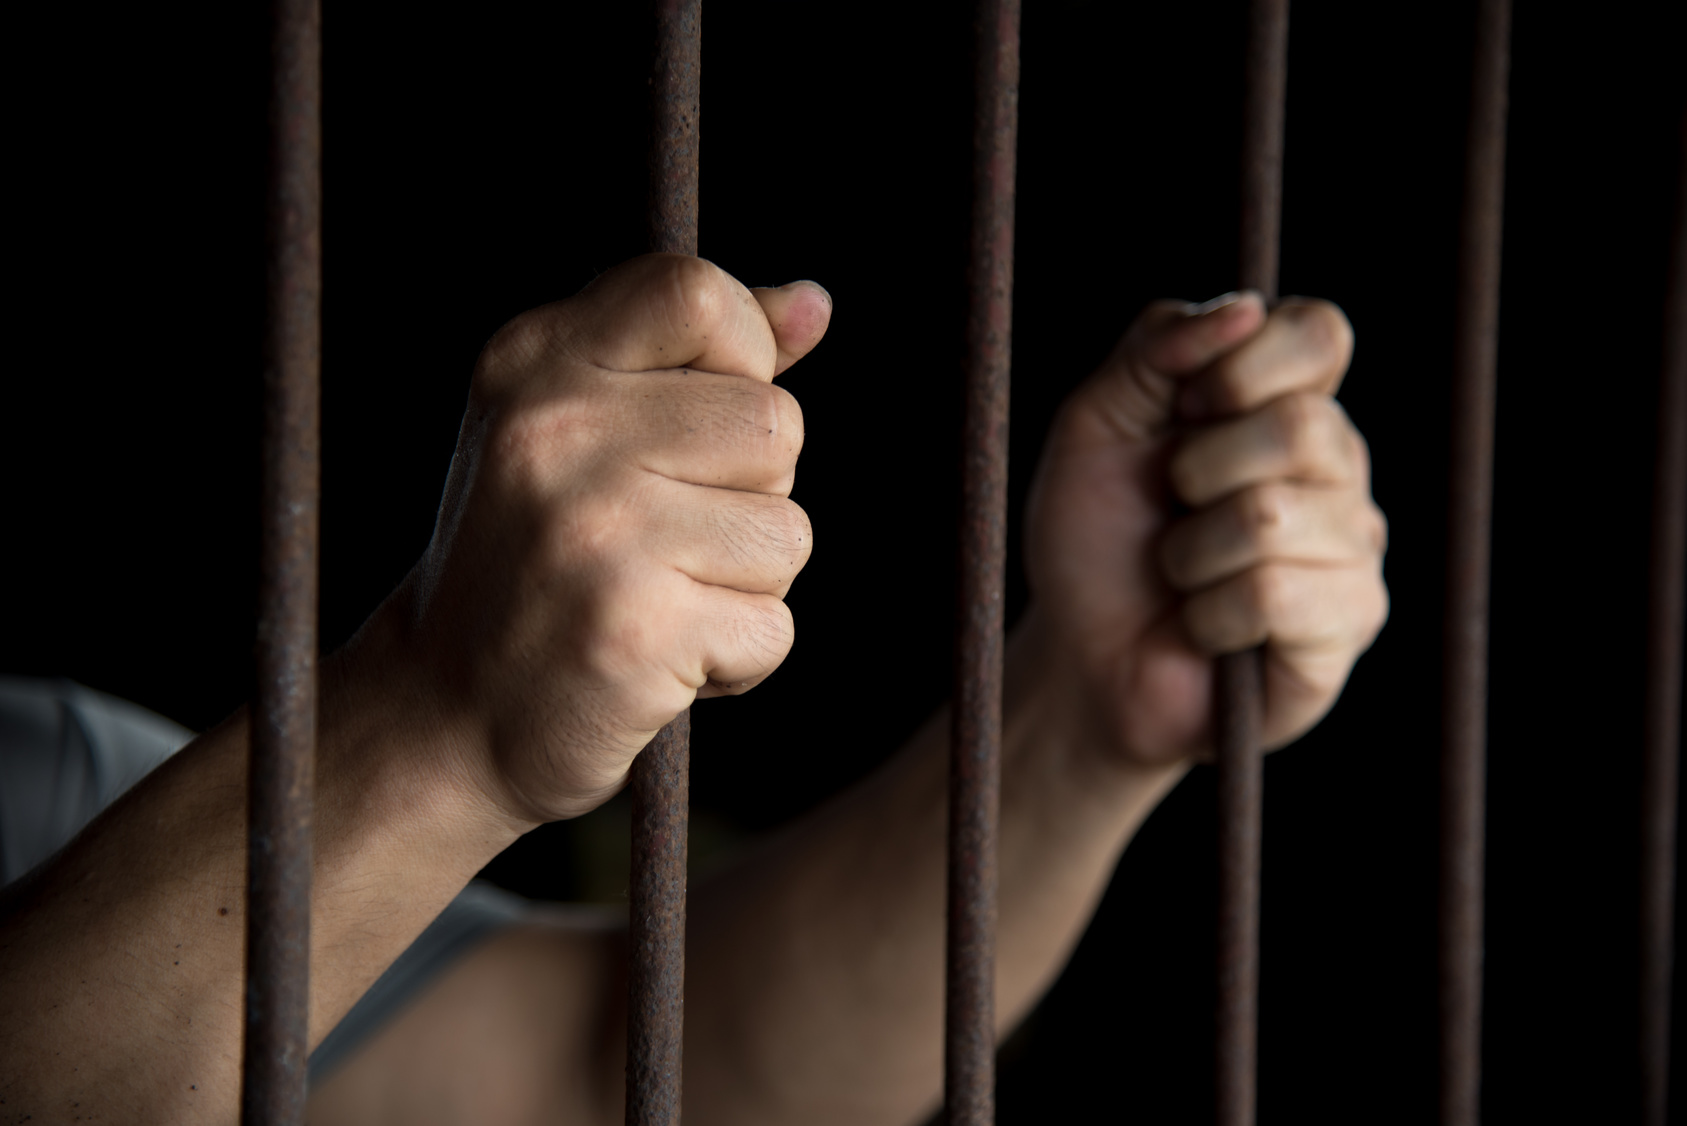 Sexkannibale möchte im Gefängnis heiraten